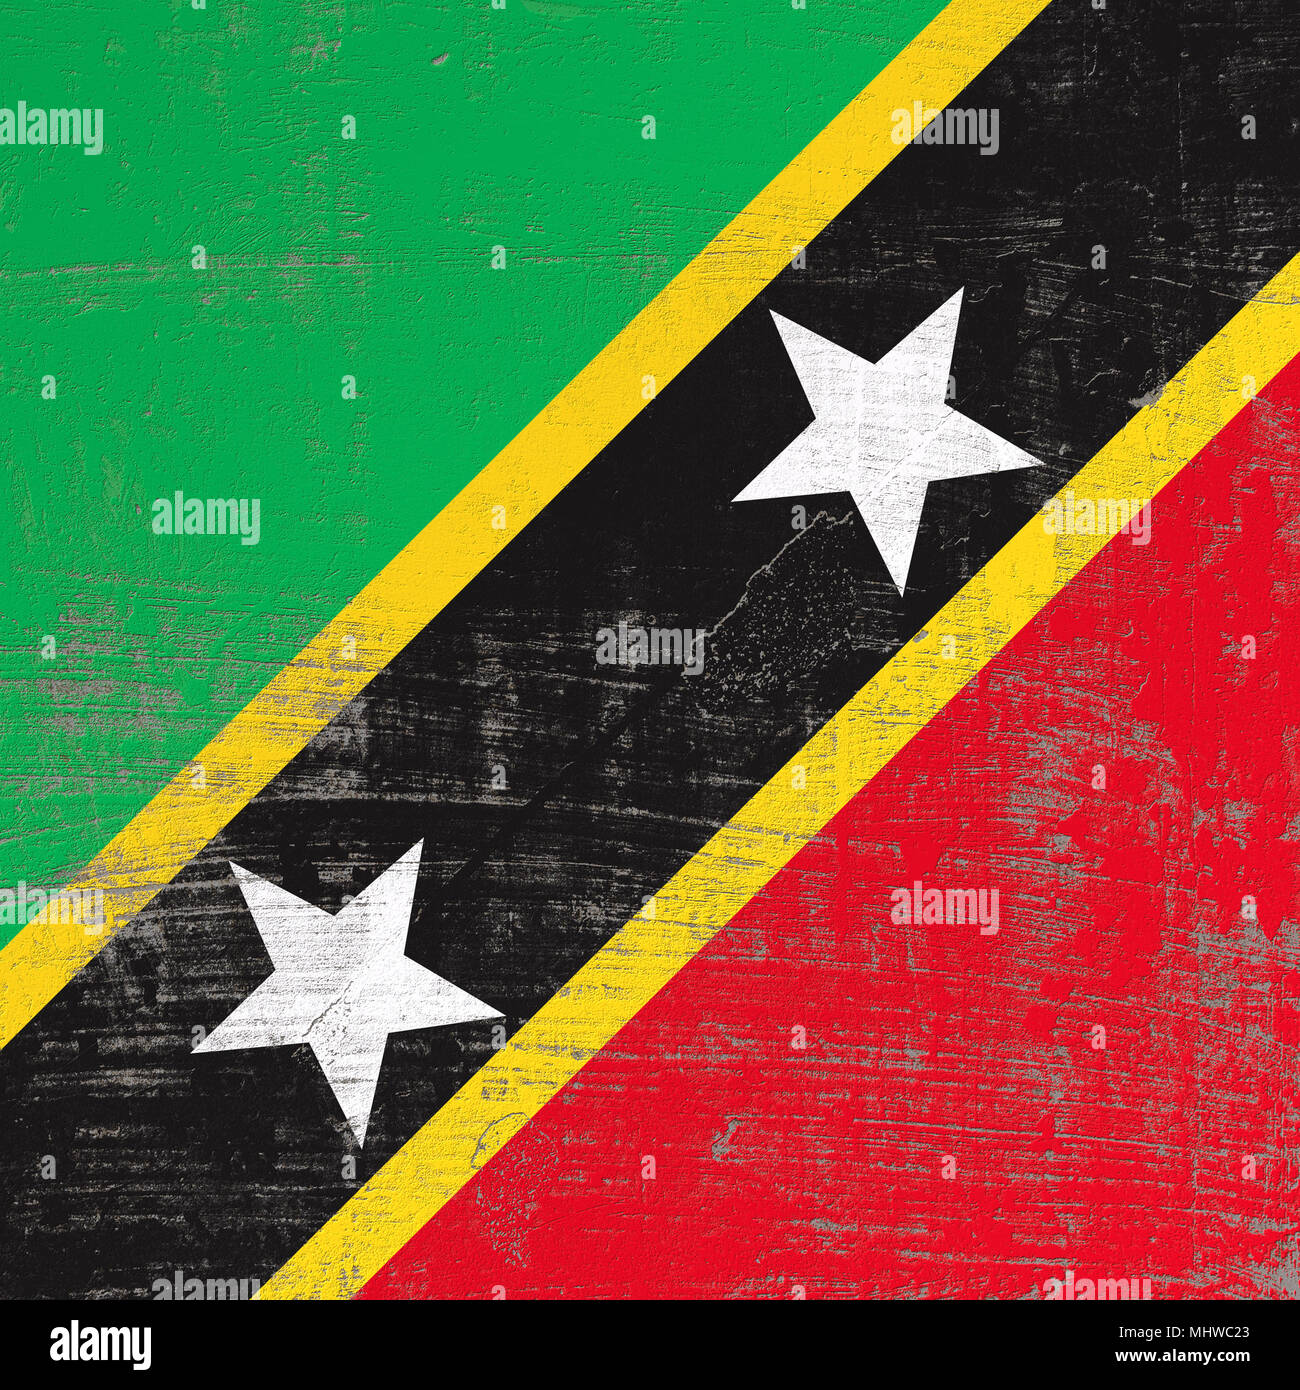 3D-Rendering von Saint Christopher und Nevis Flagge in eine verkratzte Oberfläche Stockfoto